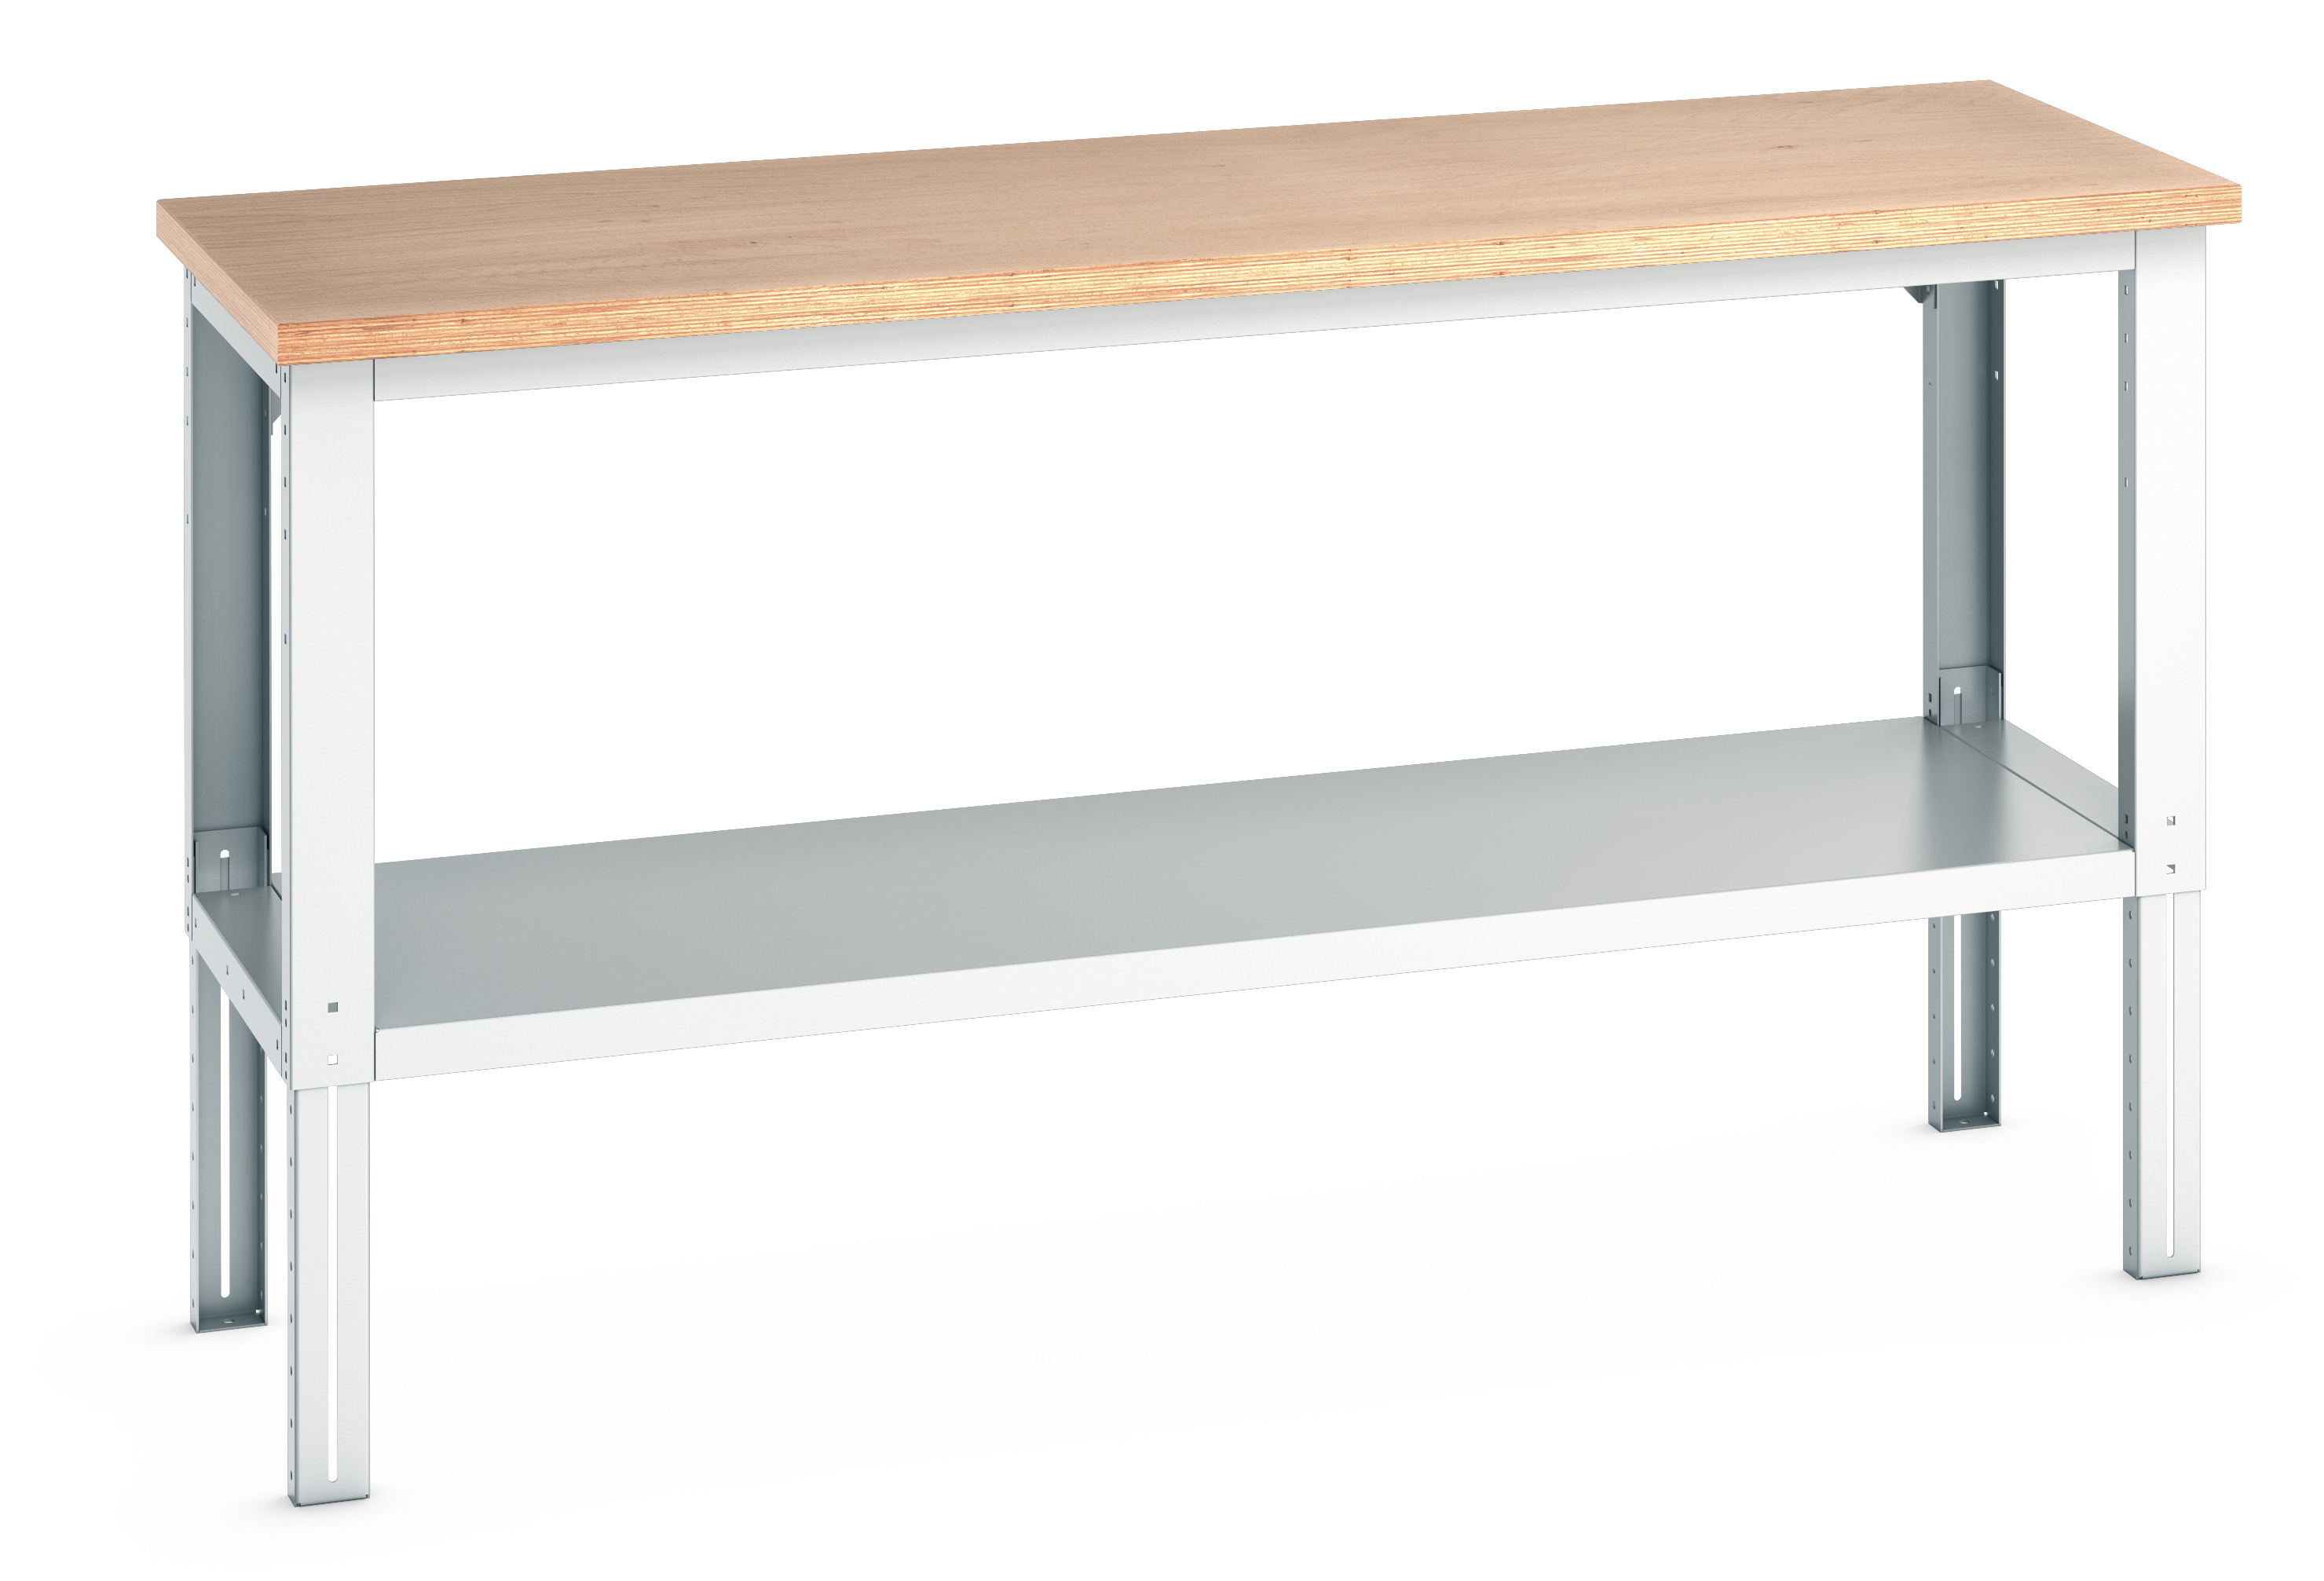 Bott Cubio Adjustable Height Framework Bench With Full Depth Base Shelf - 41003509.16V